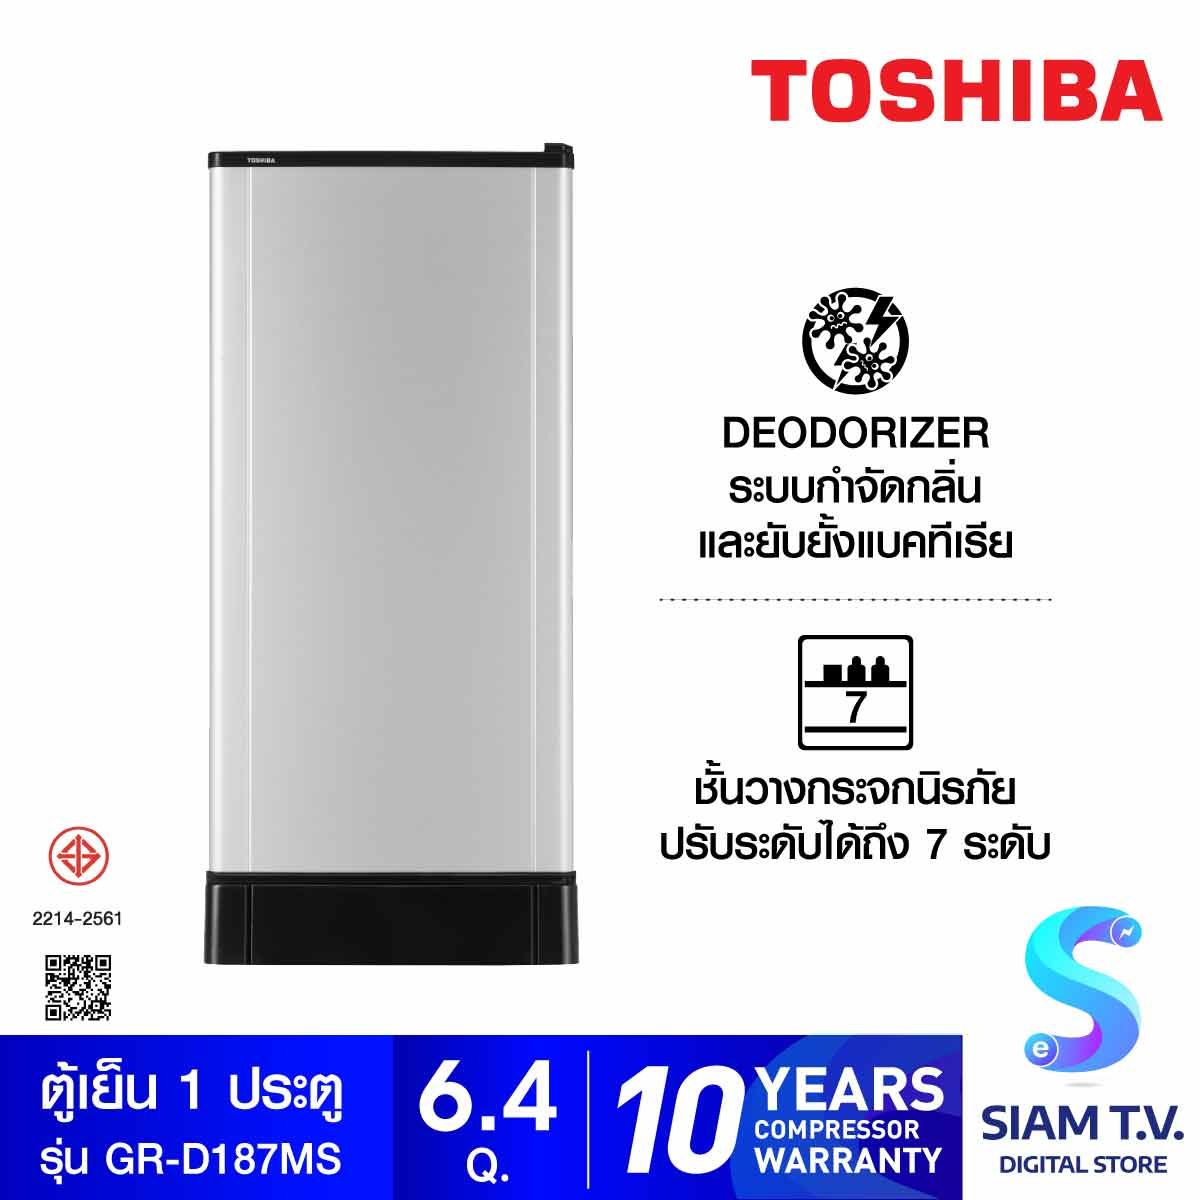 TOSHIBA ตู้เย็น 1 ประตู 6.4Q  สี  Silver รุ่น GR-D187